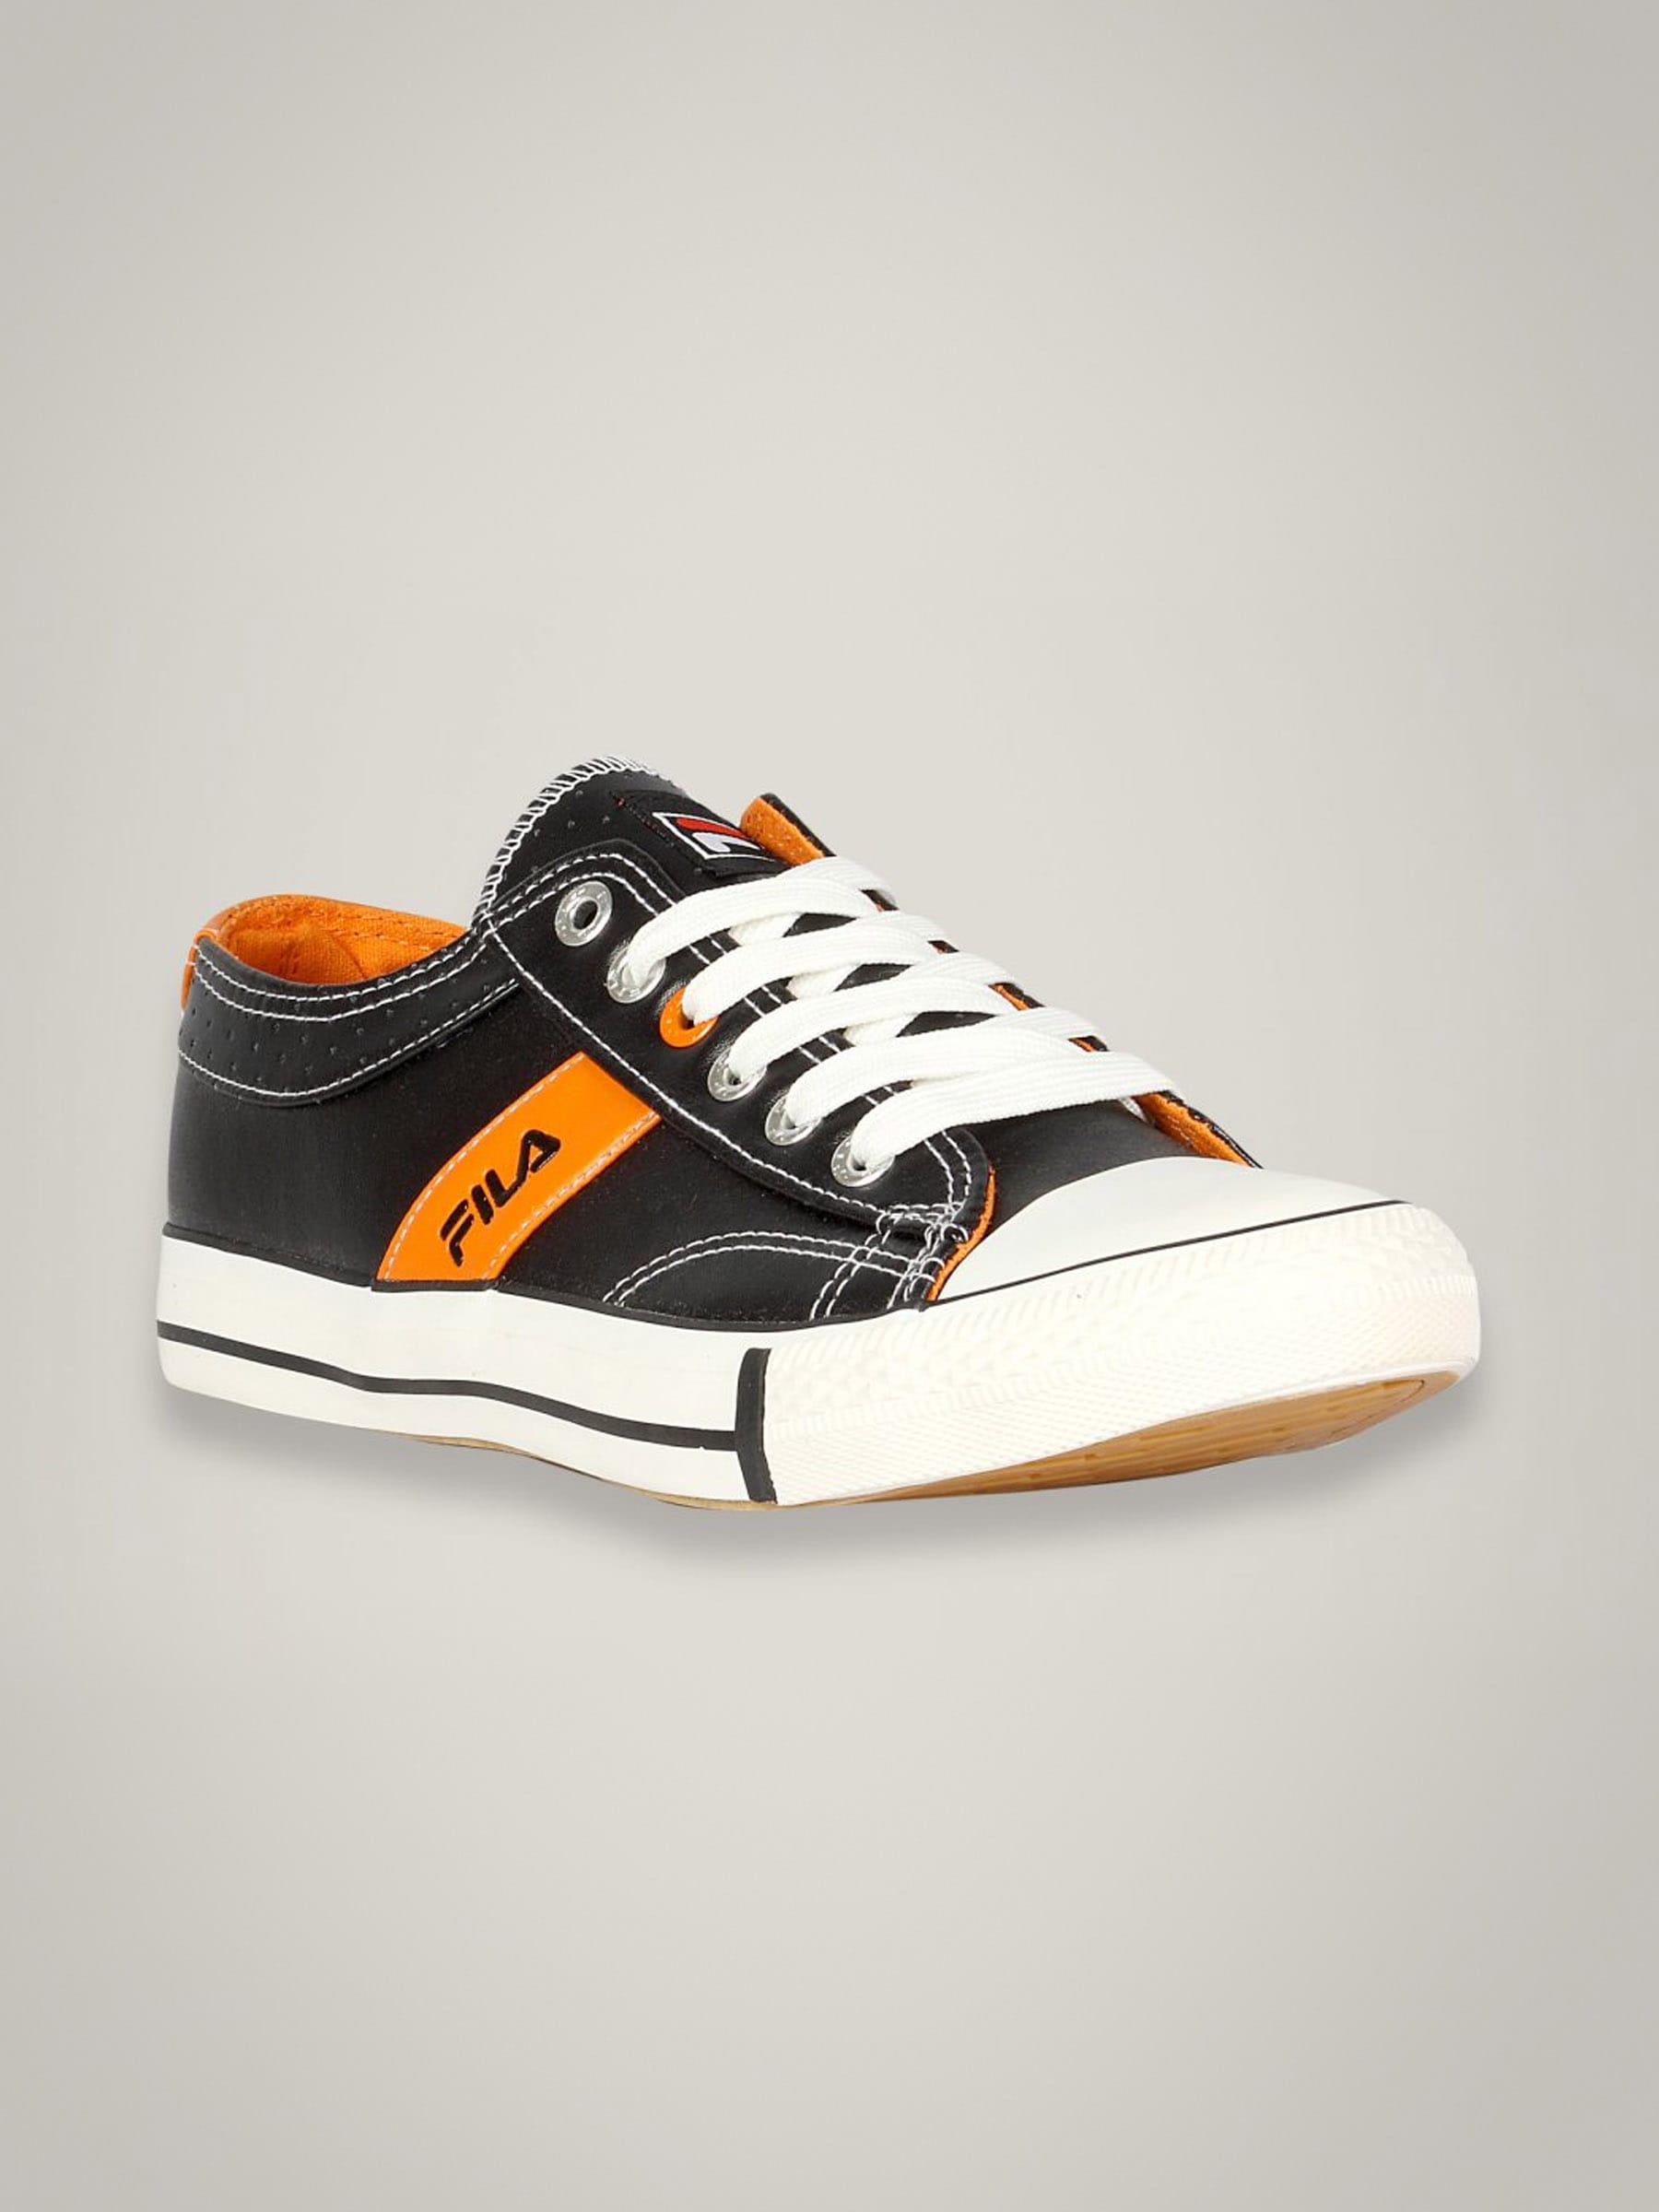 Fila Men's Liga Black Orange Shoe